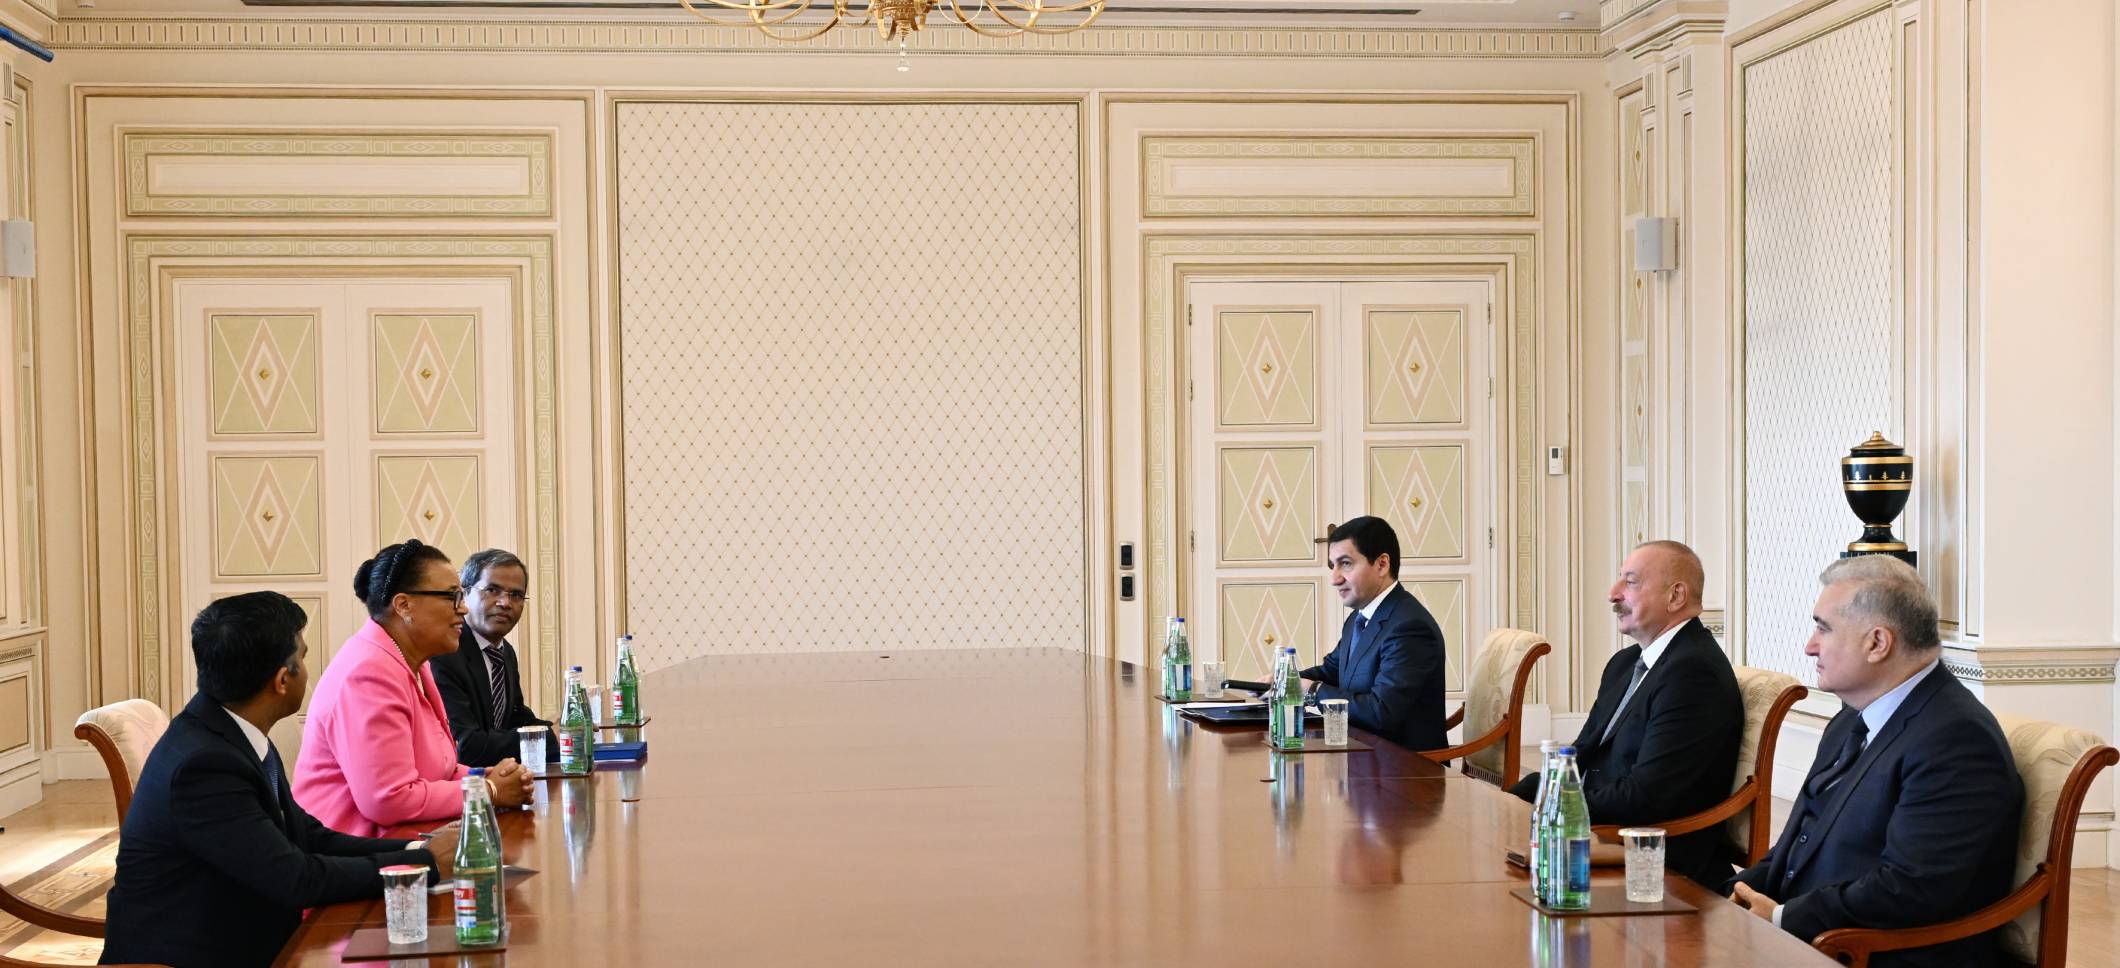 Ильхам Алиев принял генерального секретаря Содружества наций